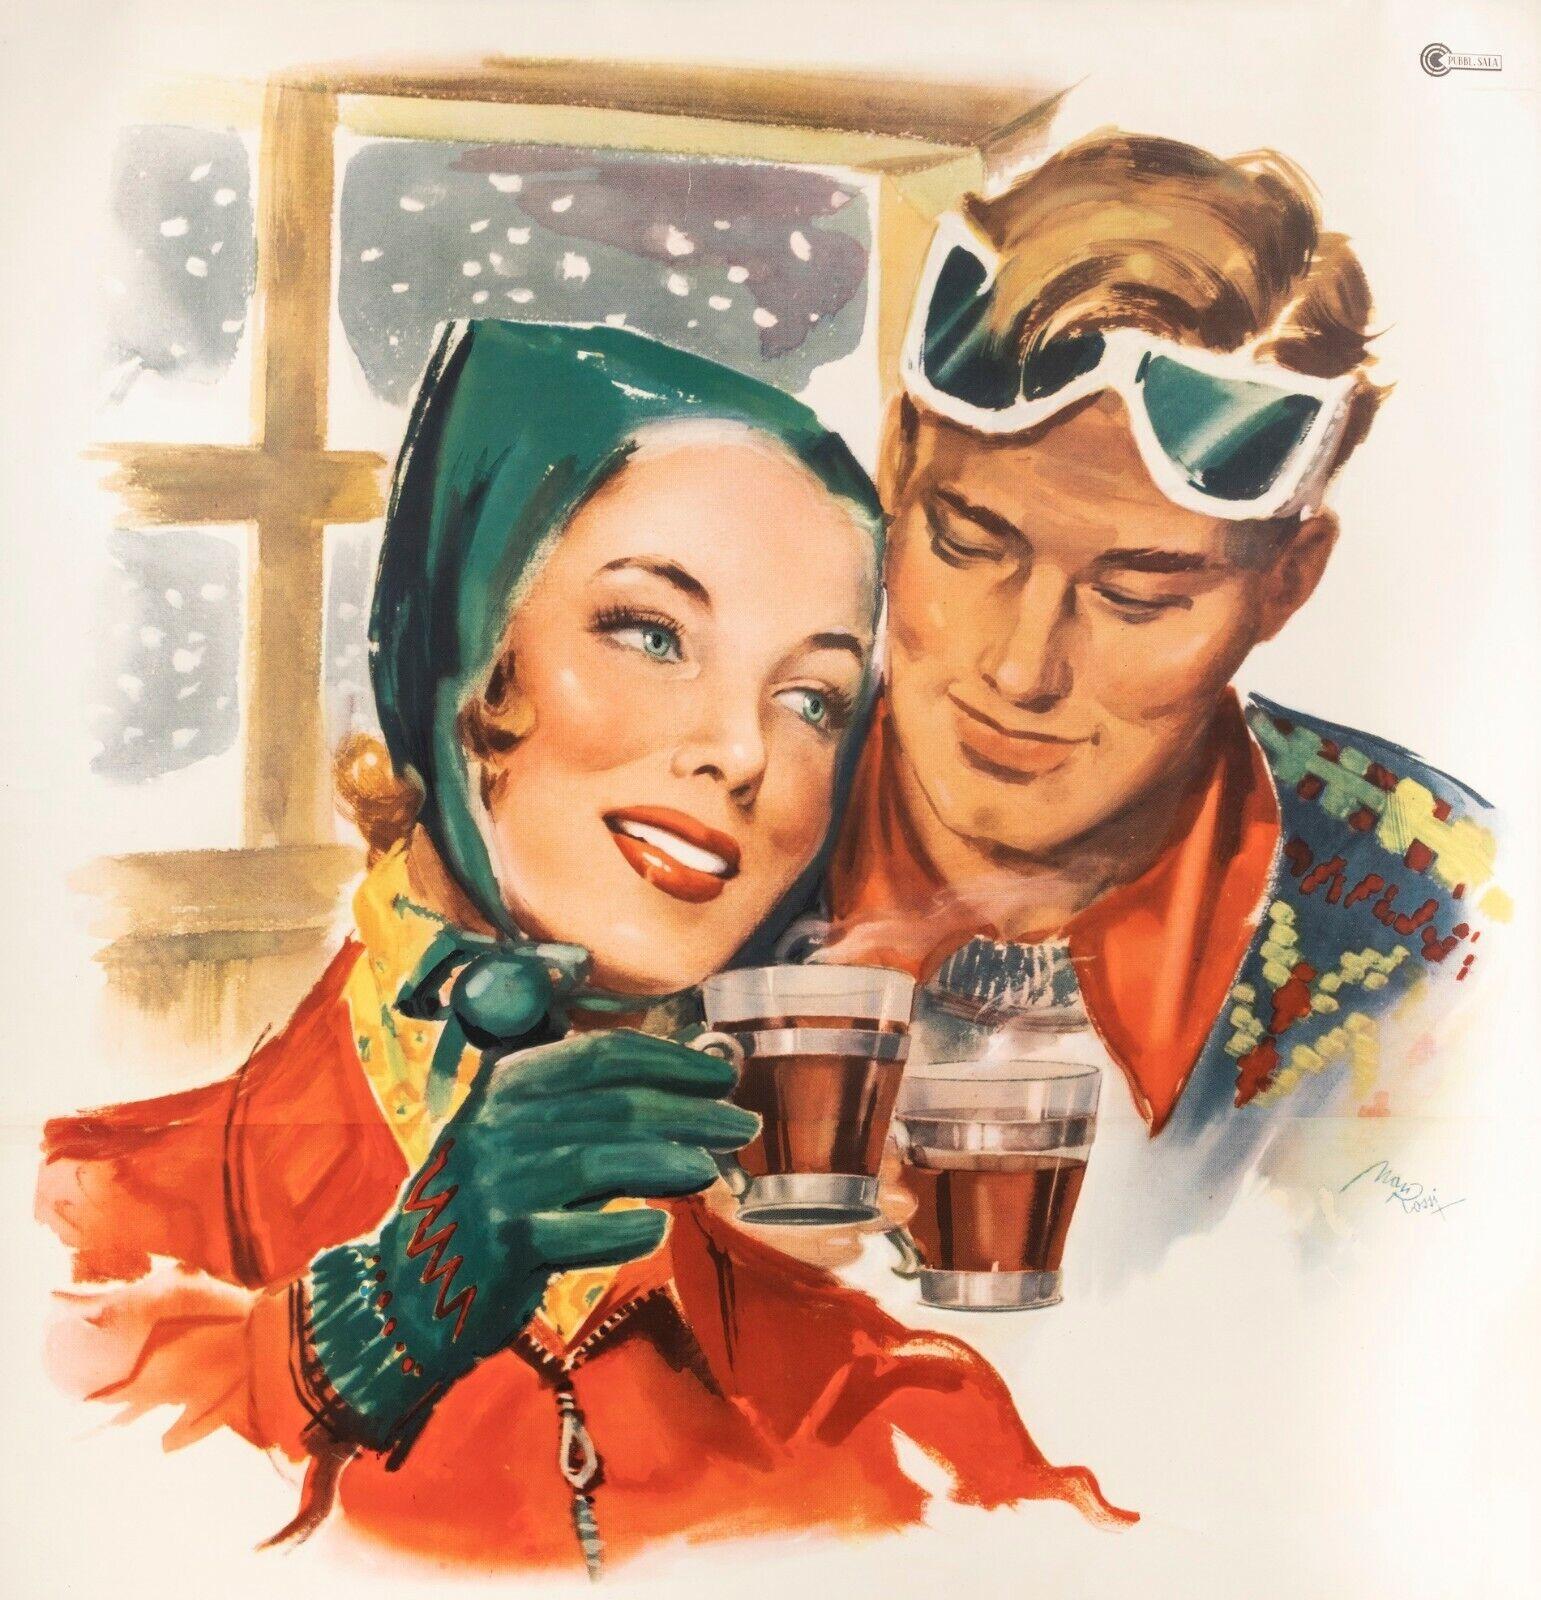 Original Vintage Poster-Rossi M.-China Martini-Quinquina-Ski, 1950

Werbeplakat für die italienische Vorspeise China Martini.

Er kann auch heiß getrunken werden, gemischt mit warmem Zitronenwasser. Dies wird auf diesem Plakat deutlich, auf dem wir